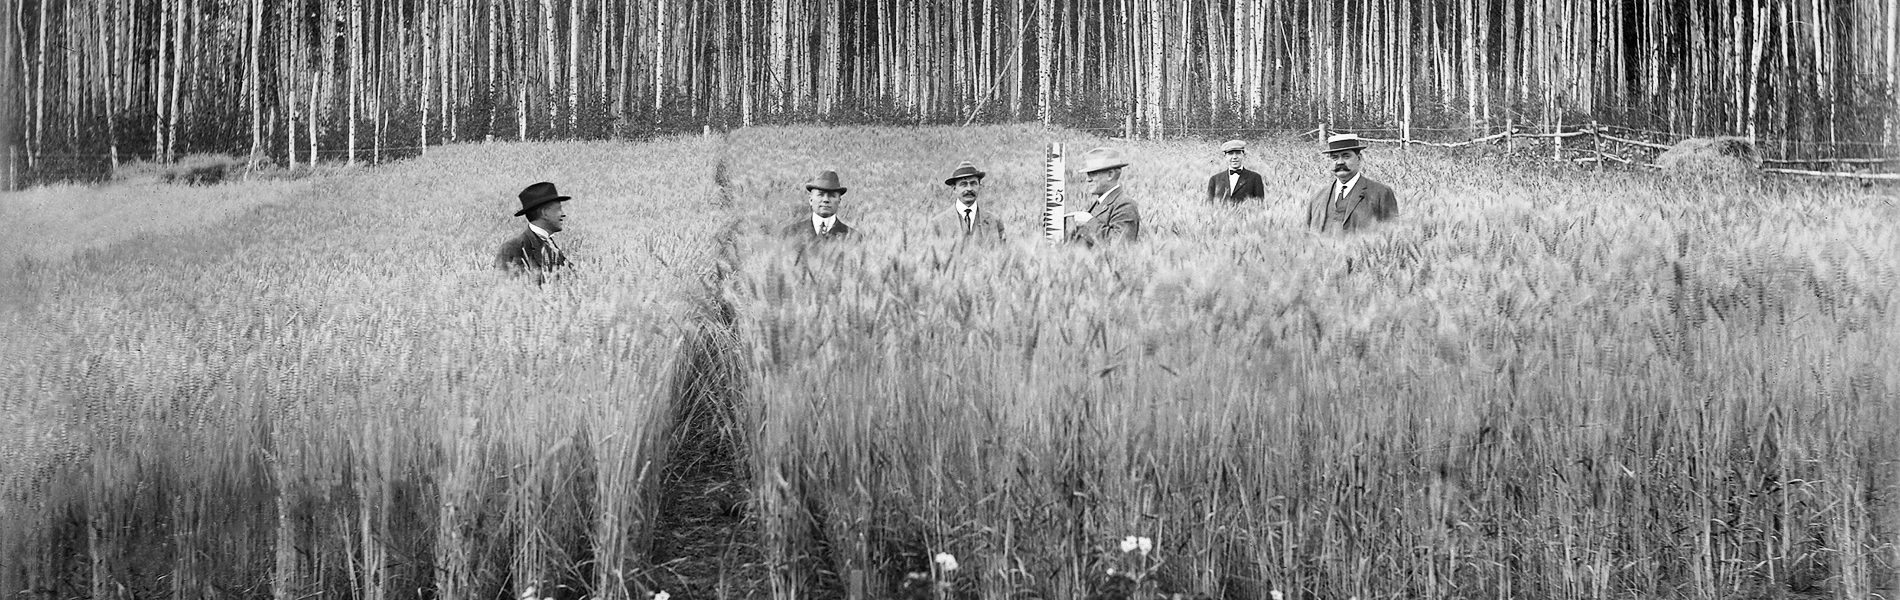 Men in a field of barley